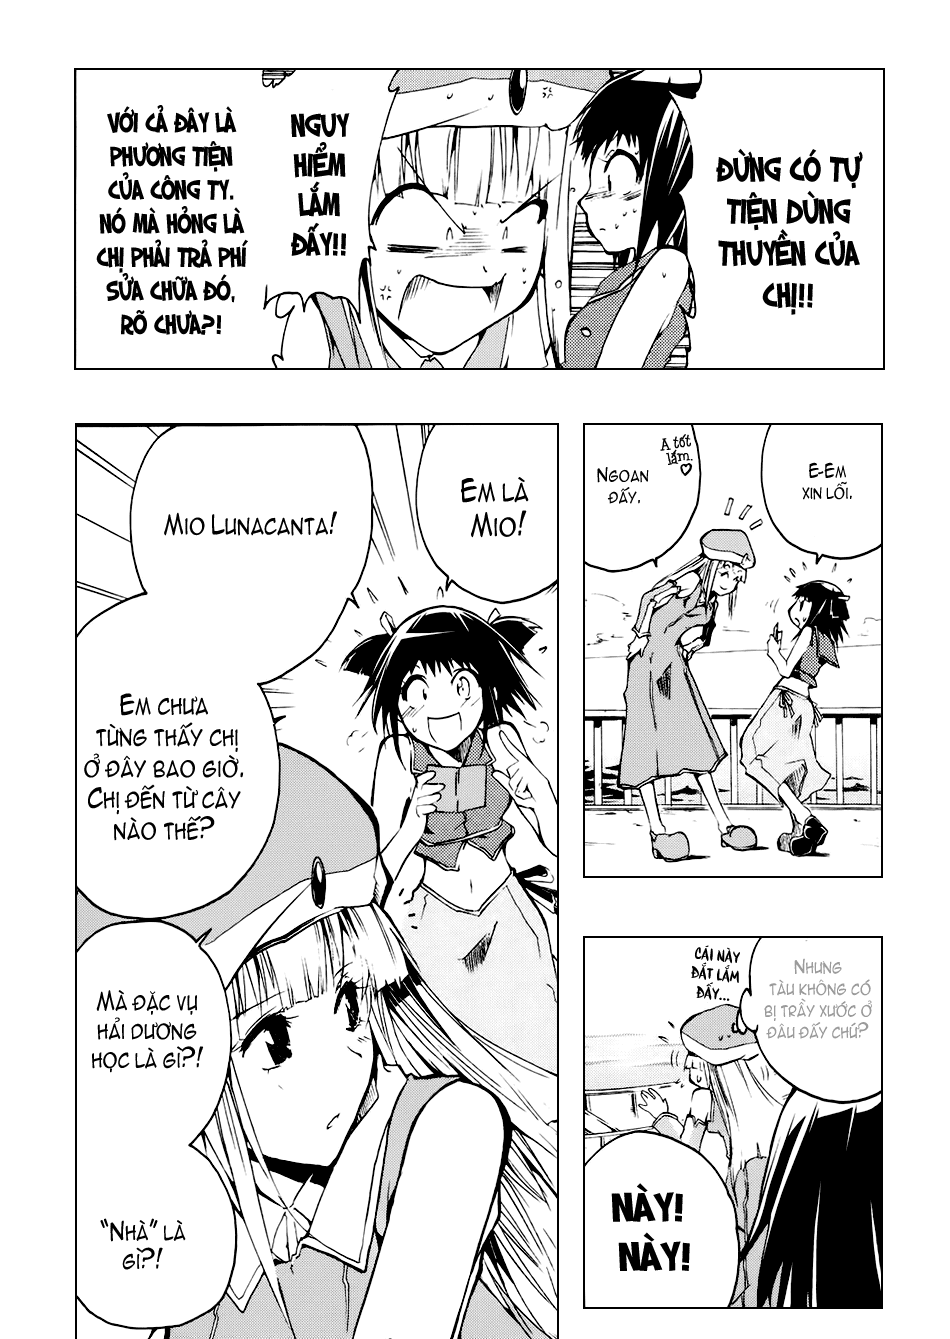 [Manga]: Esprit 0023